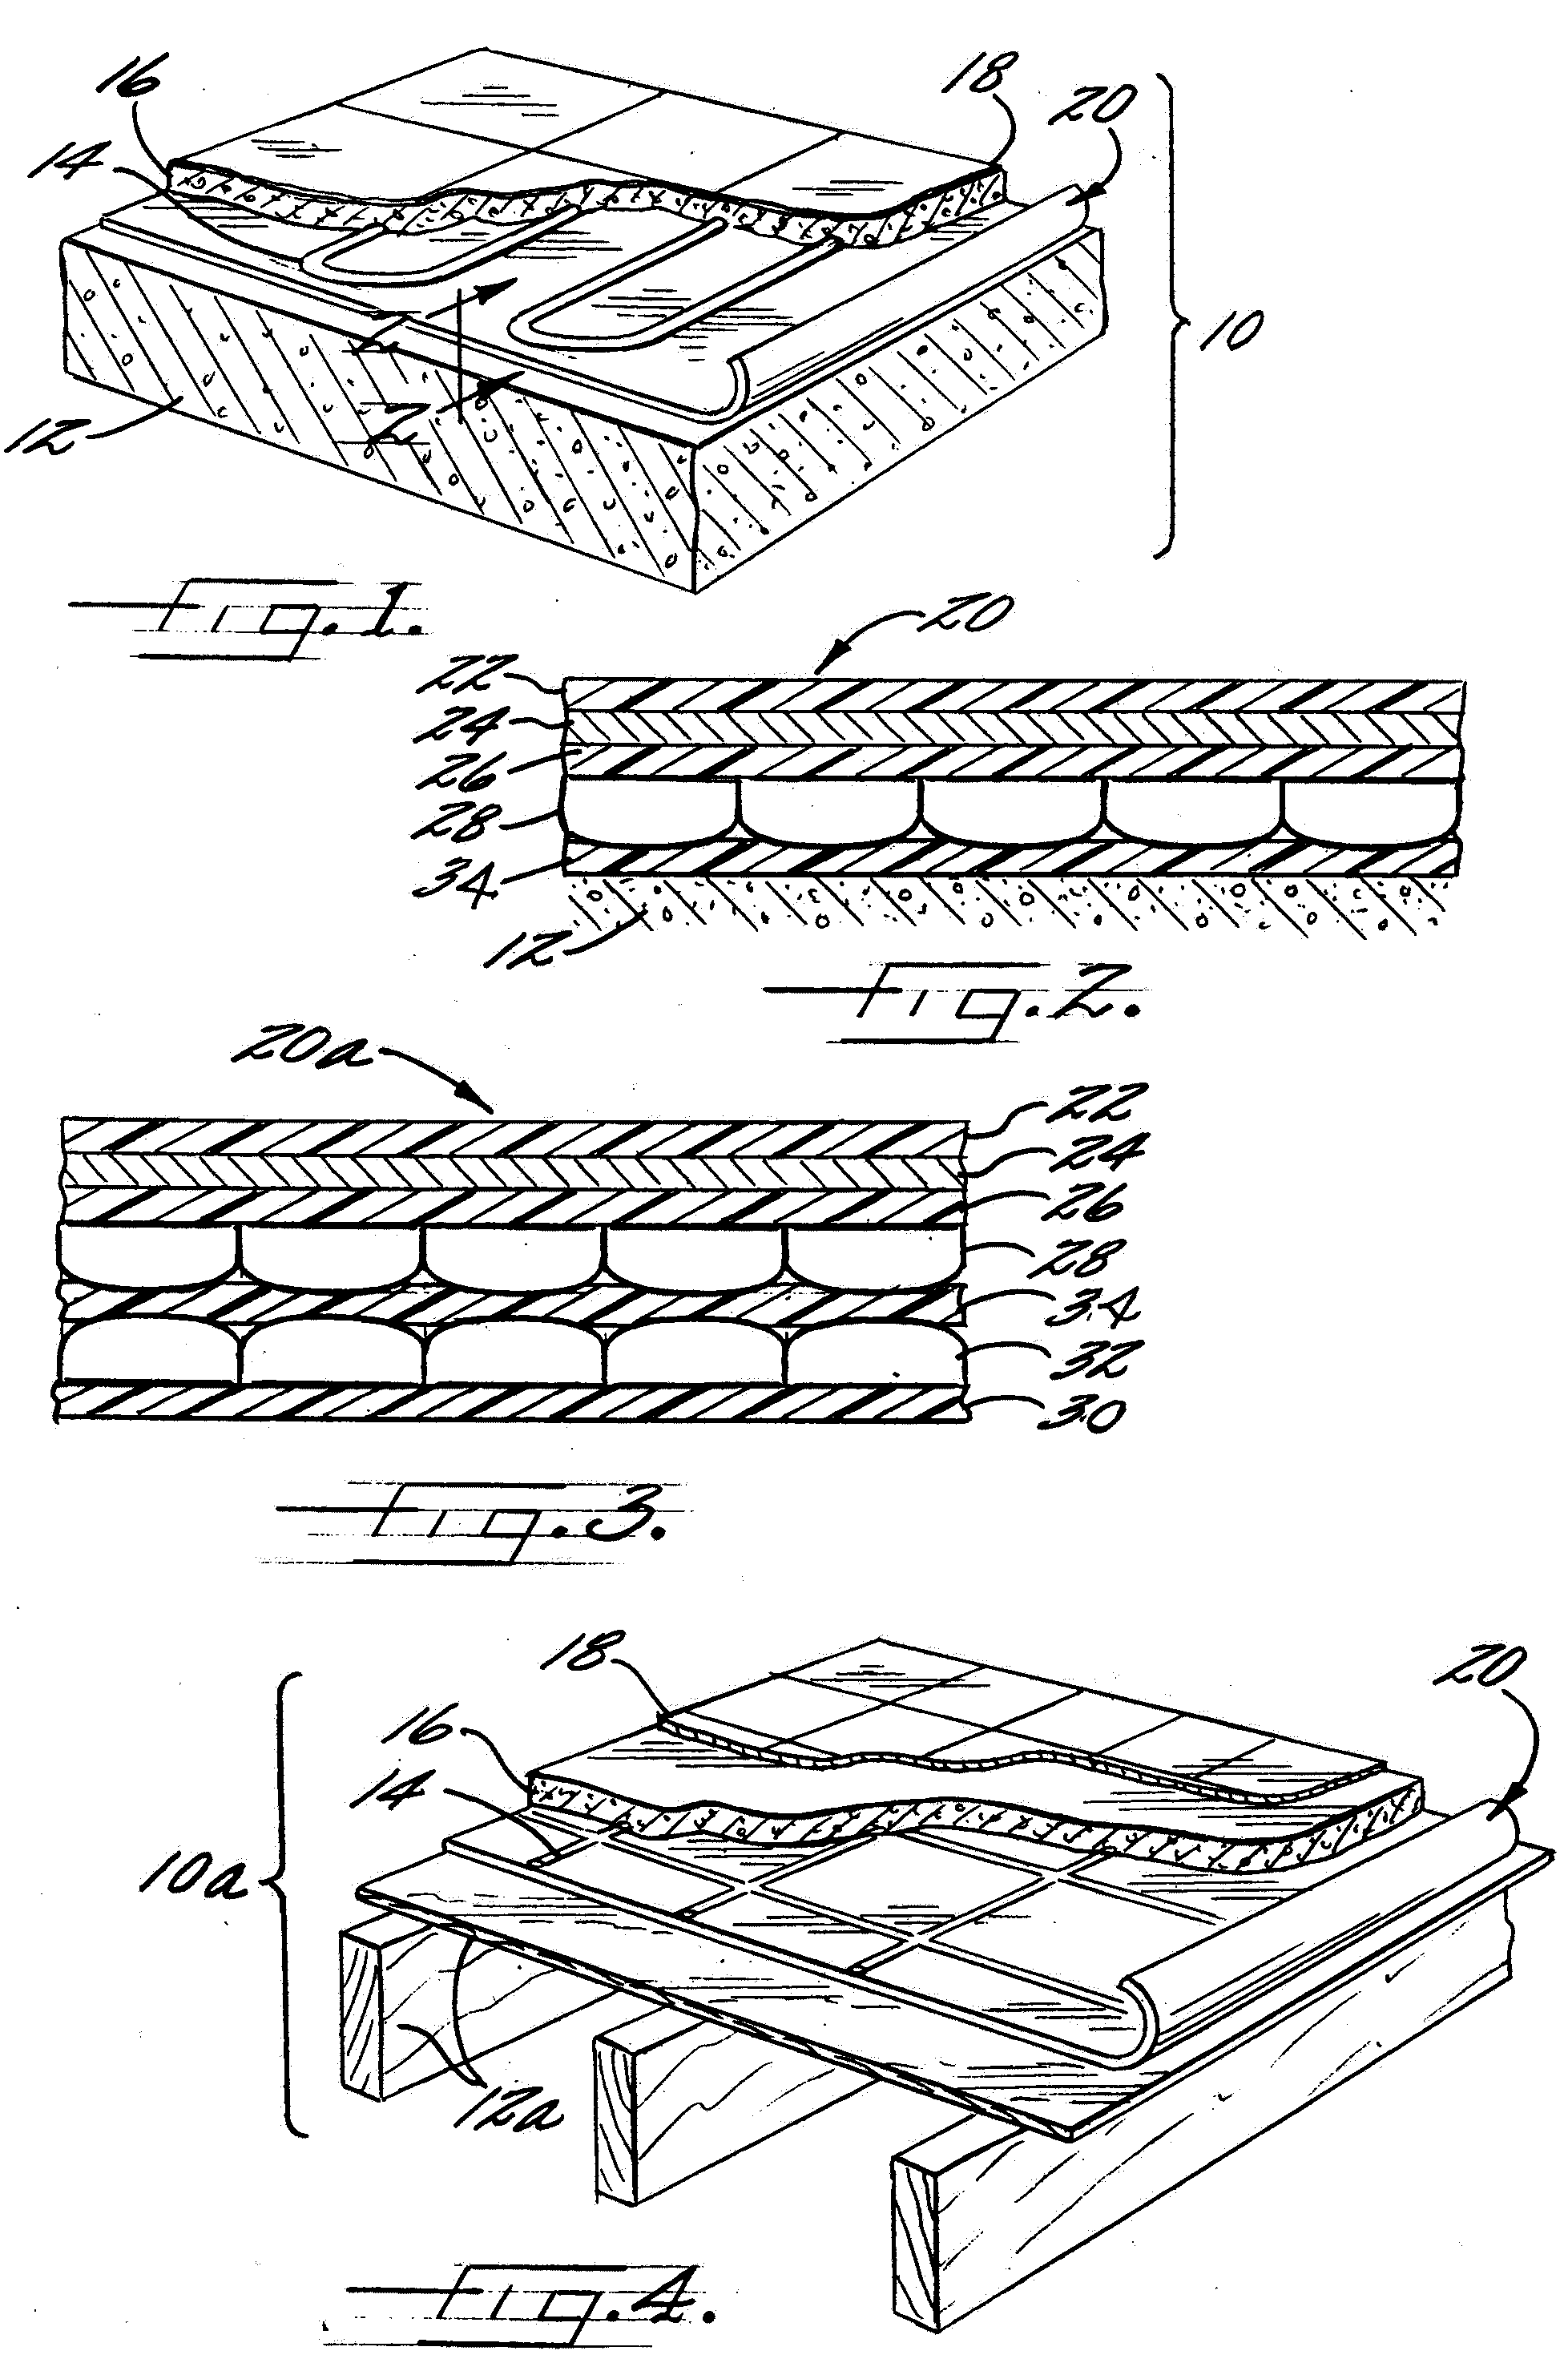 Multi-layer conductive/insulation pad